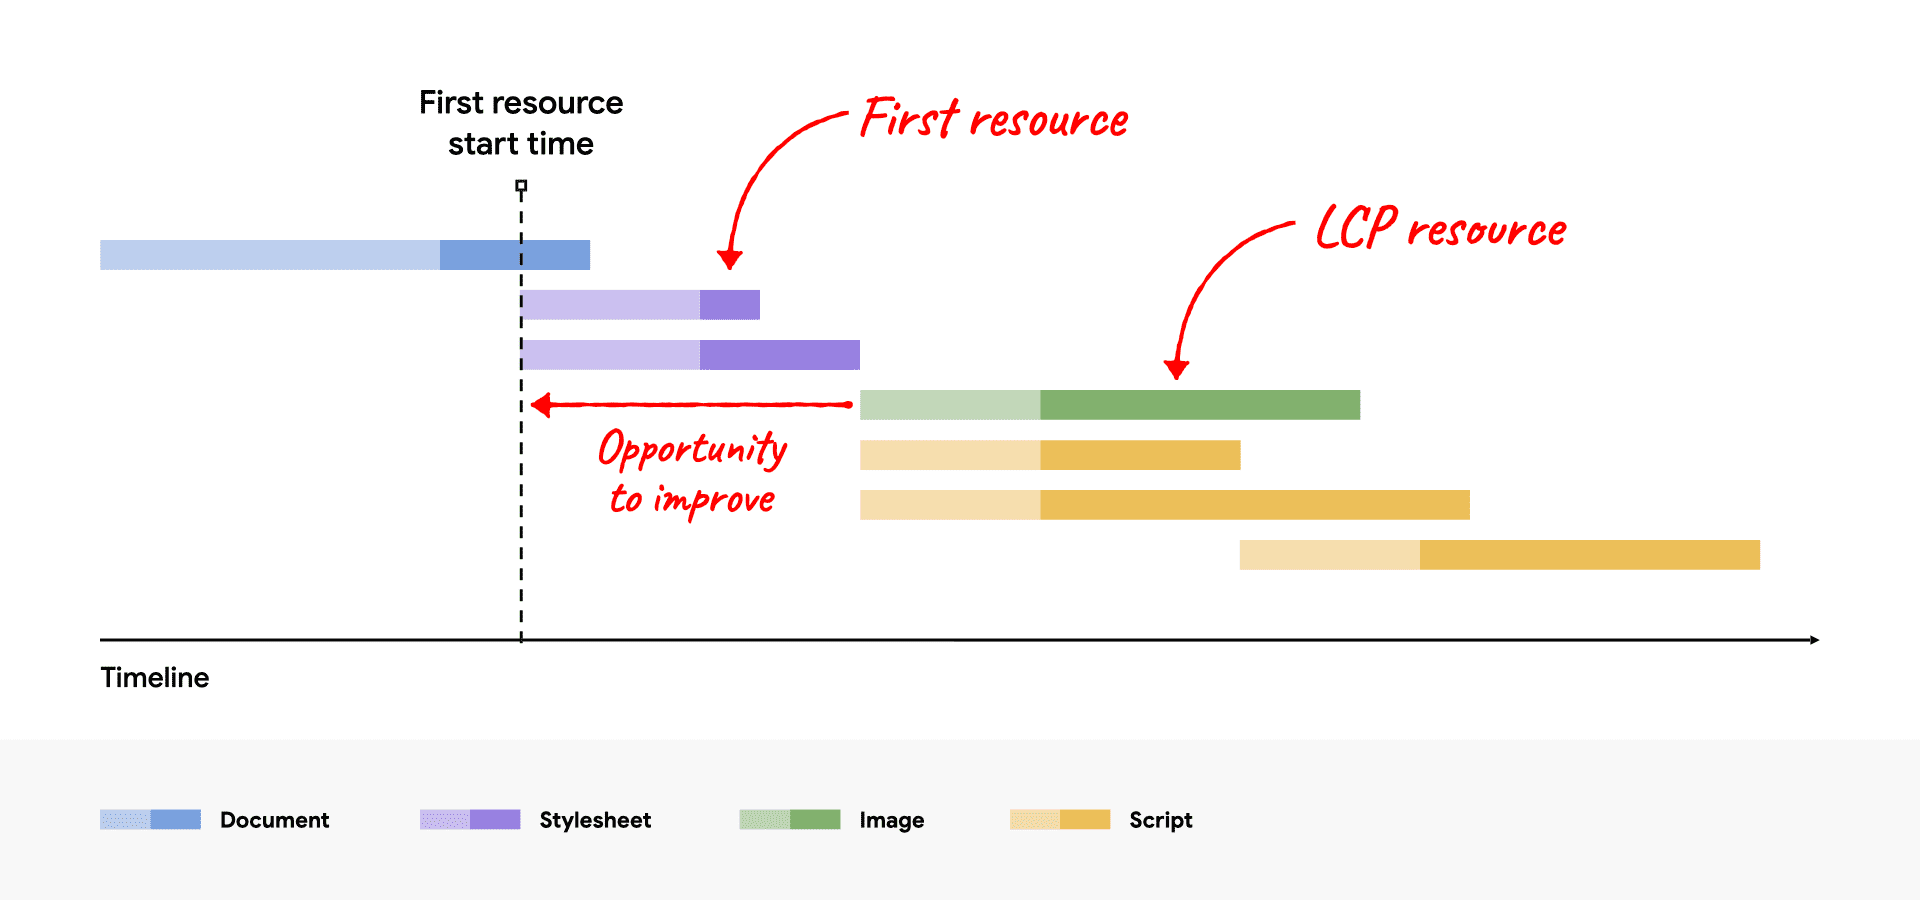 نمودار آبشار شبکه که منبع LCP را نشان می‌دهد که بعد از اولین منبع شروع می‌شود و فرصت بهبود را نشان می‌دهد.